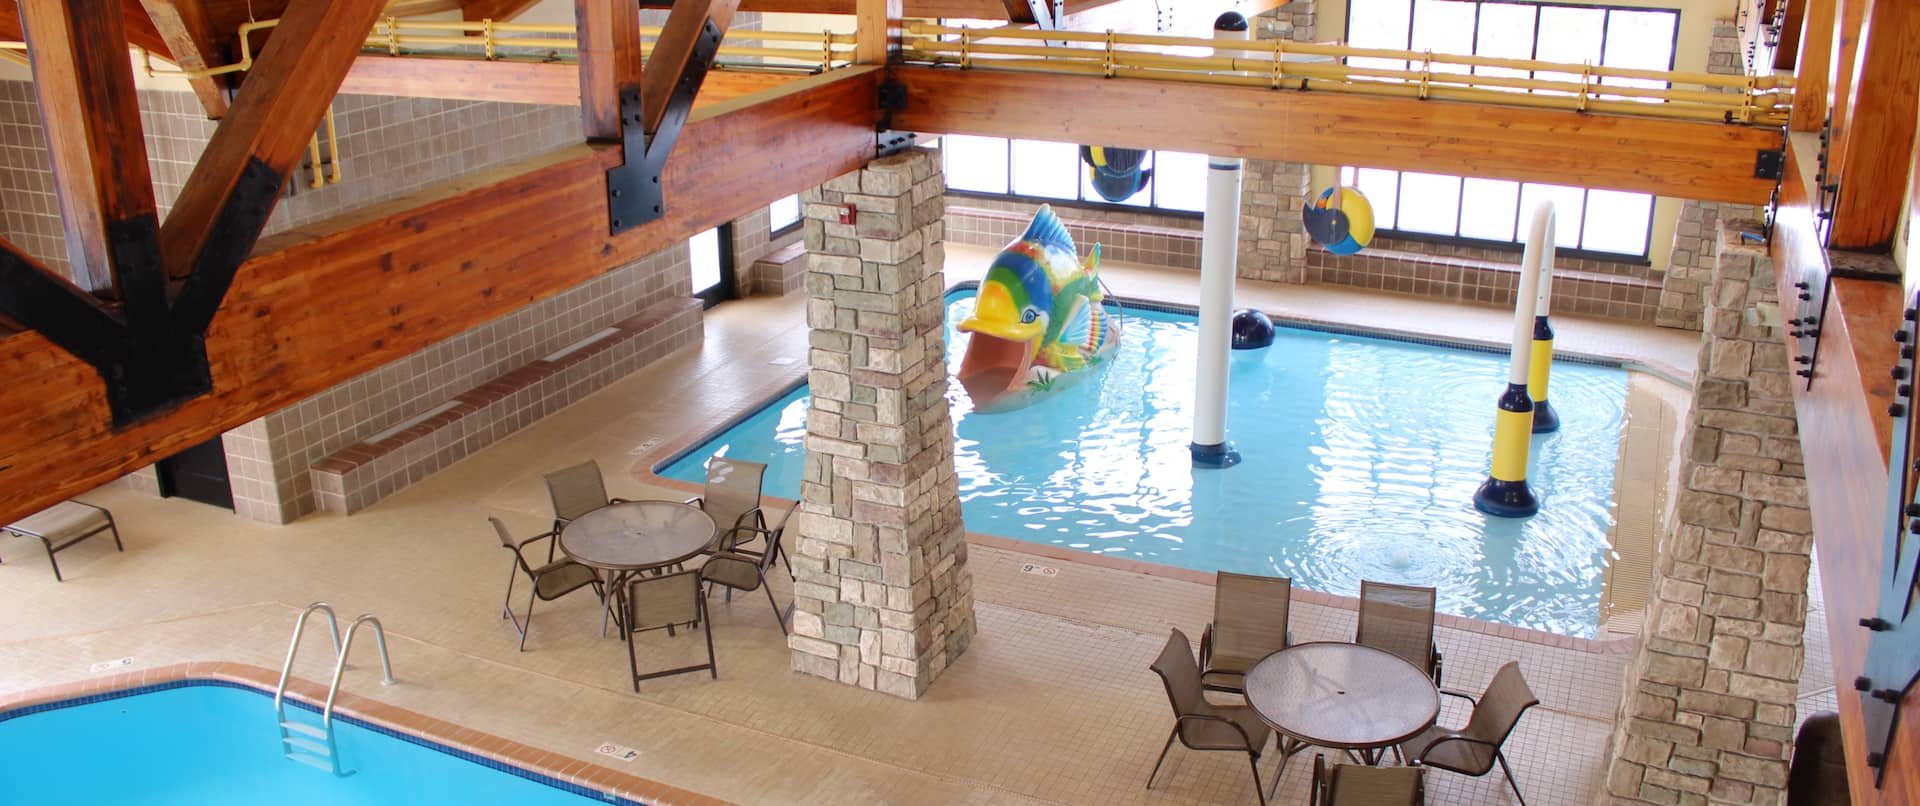 Indoor Pool Recreational Area